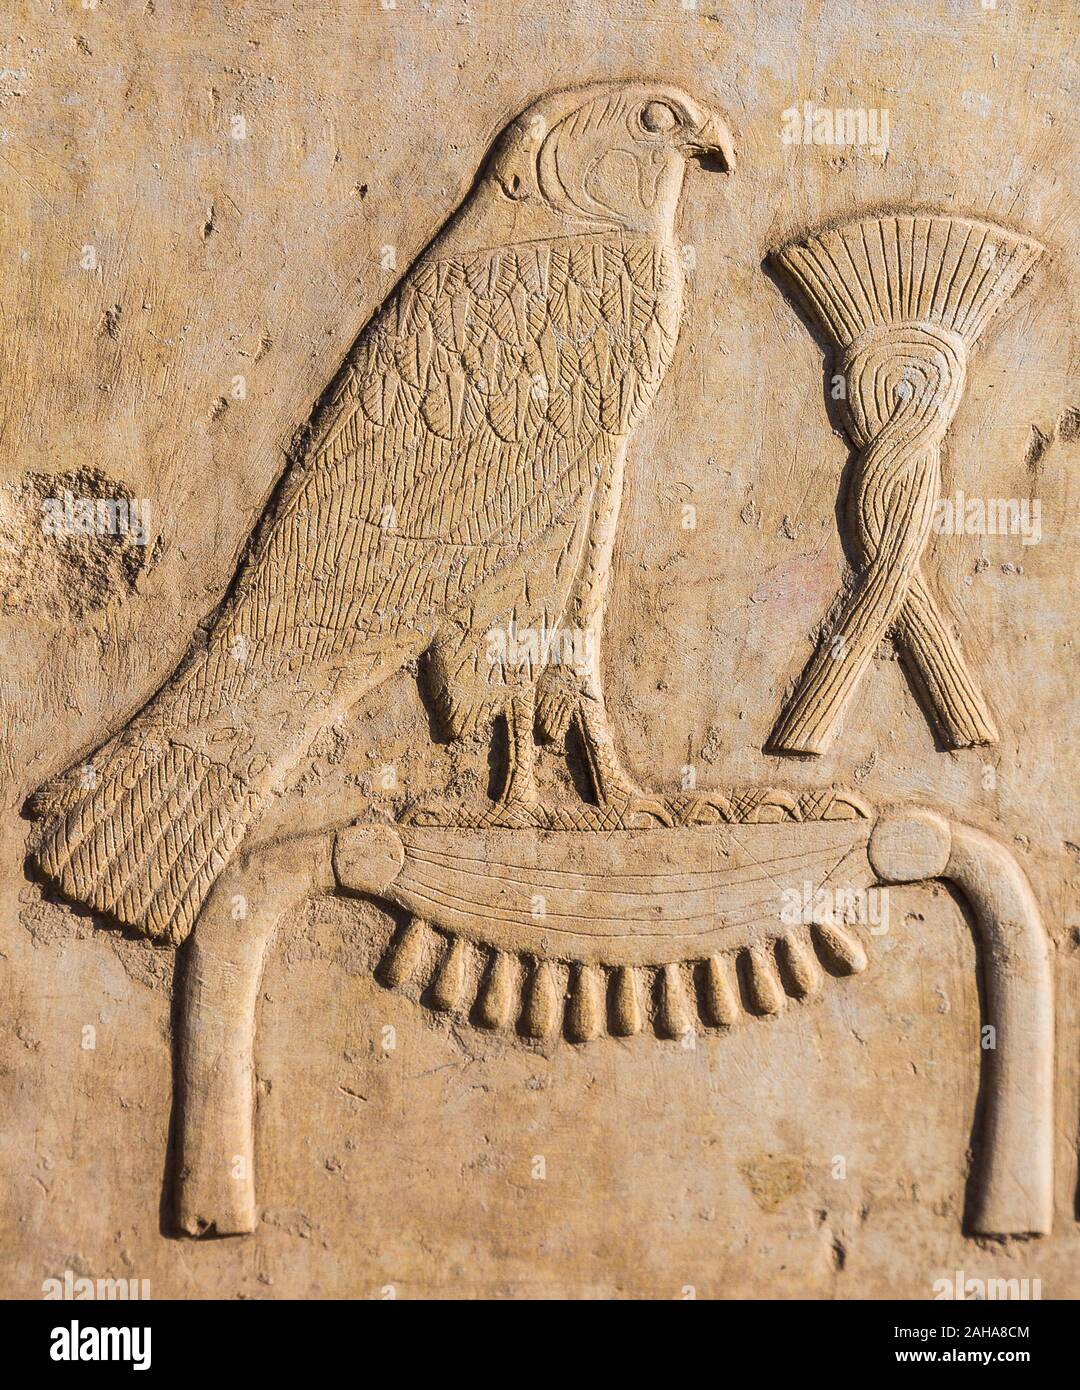 UNESCO Welterbe, Theben in Ägypten, Karnak Tempel, das Open Air Museum, ein Relief mit der Darstellung der Namen eines Königs. Die Hawk symbolisiert den Gott Horus. Ihr Stockfoto